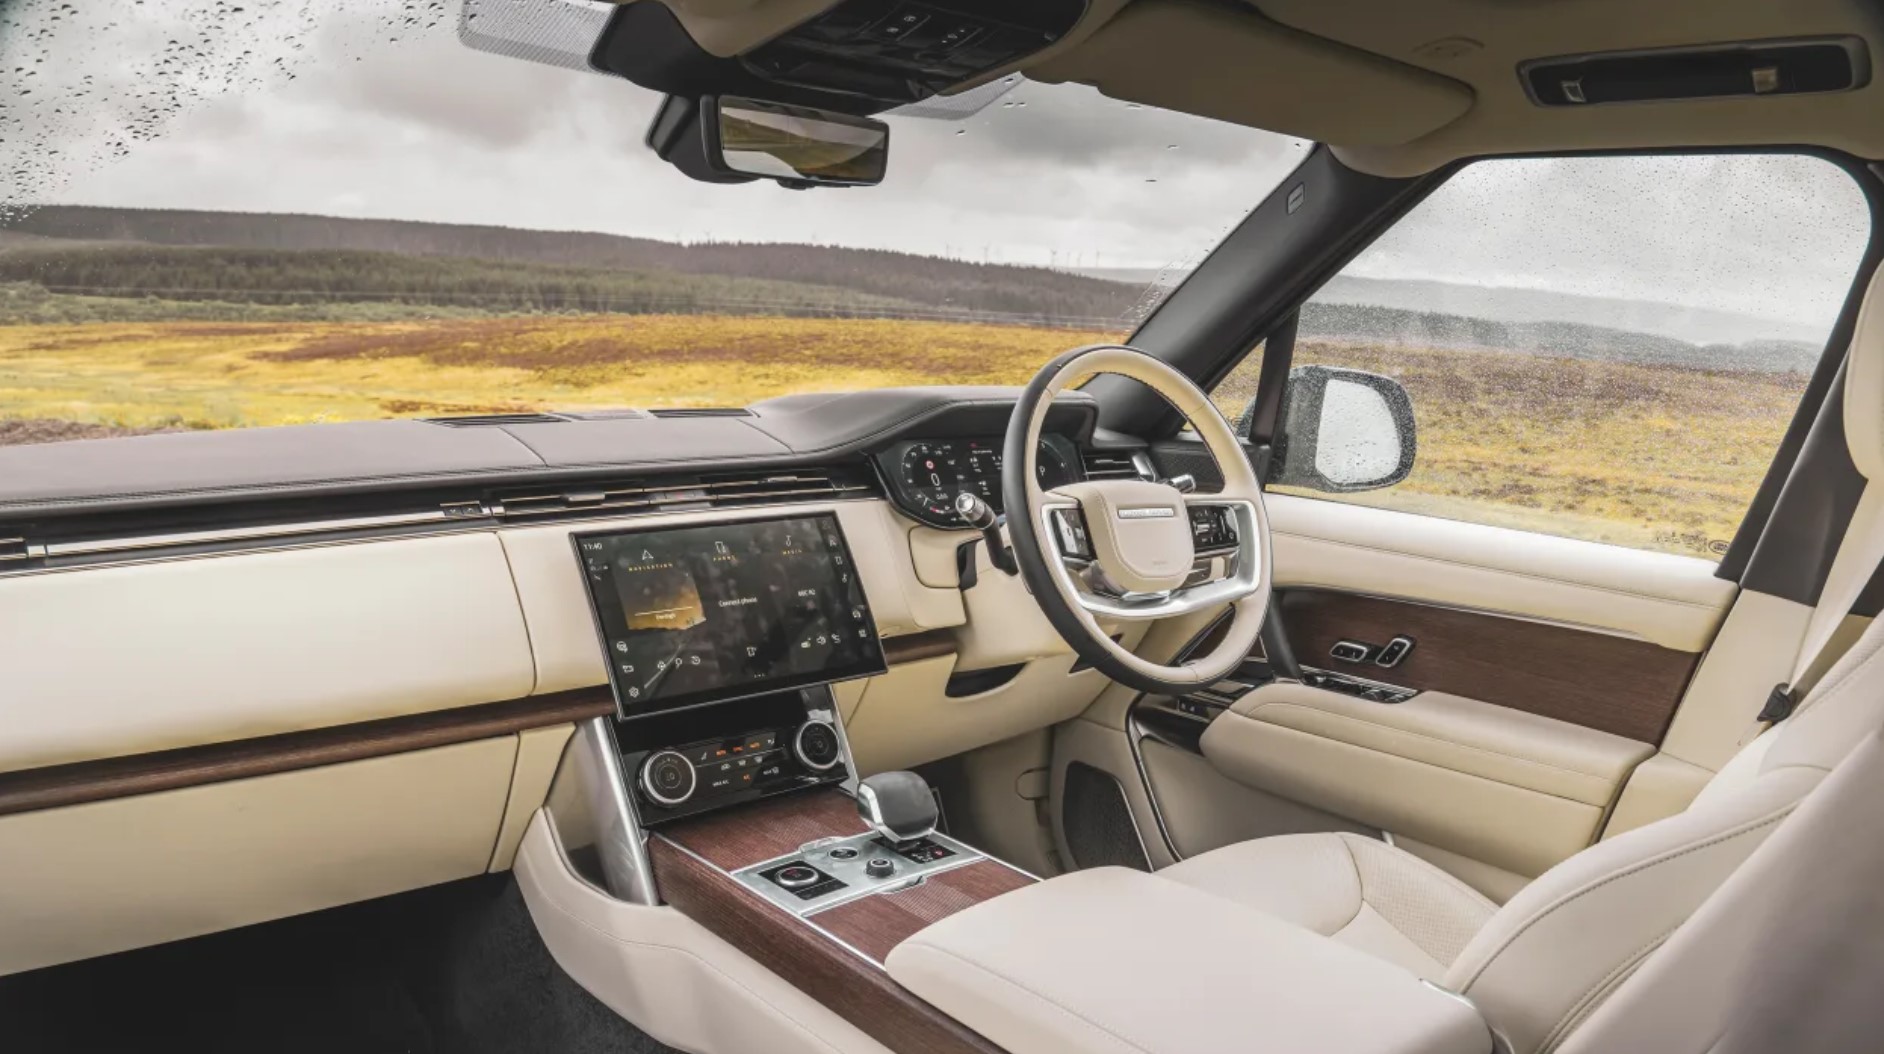 Range Rover Bentley Bentayga comparison 2022 10